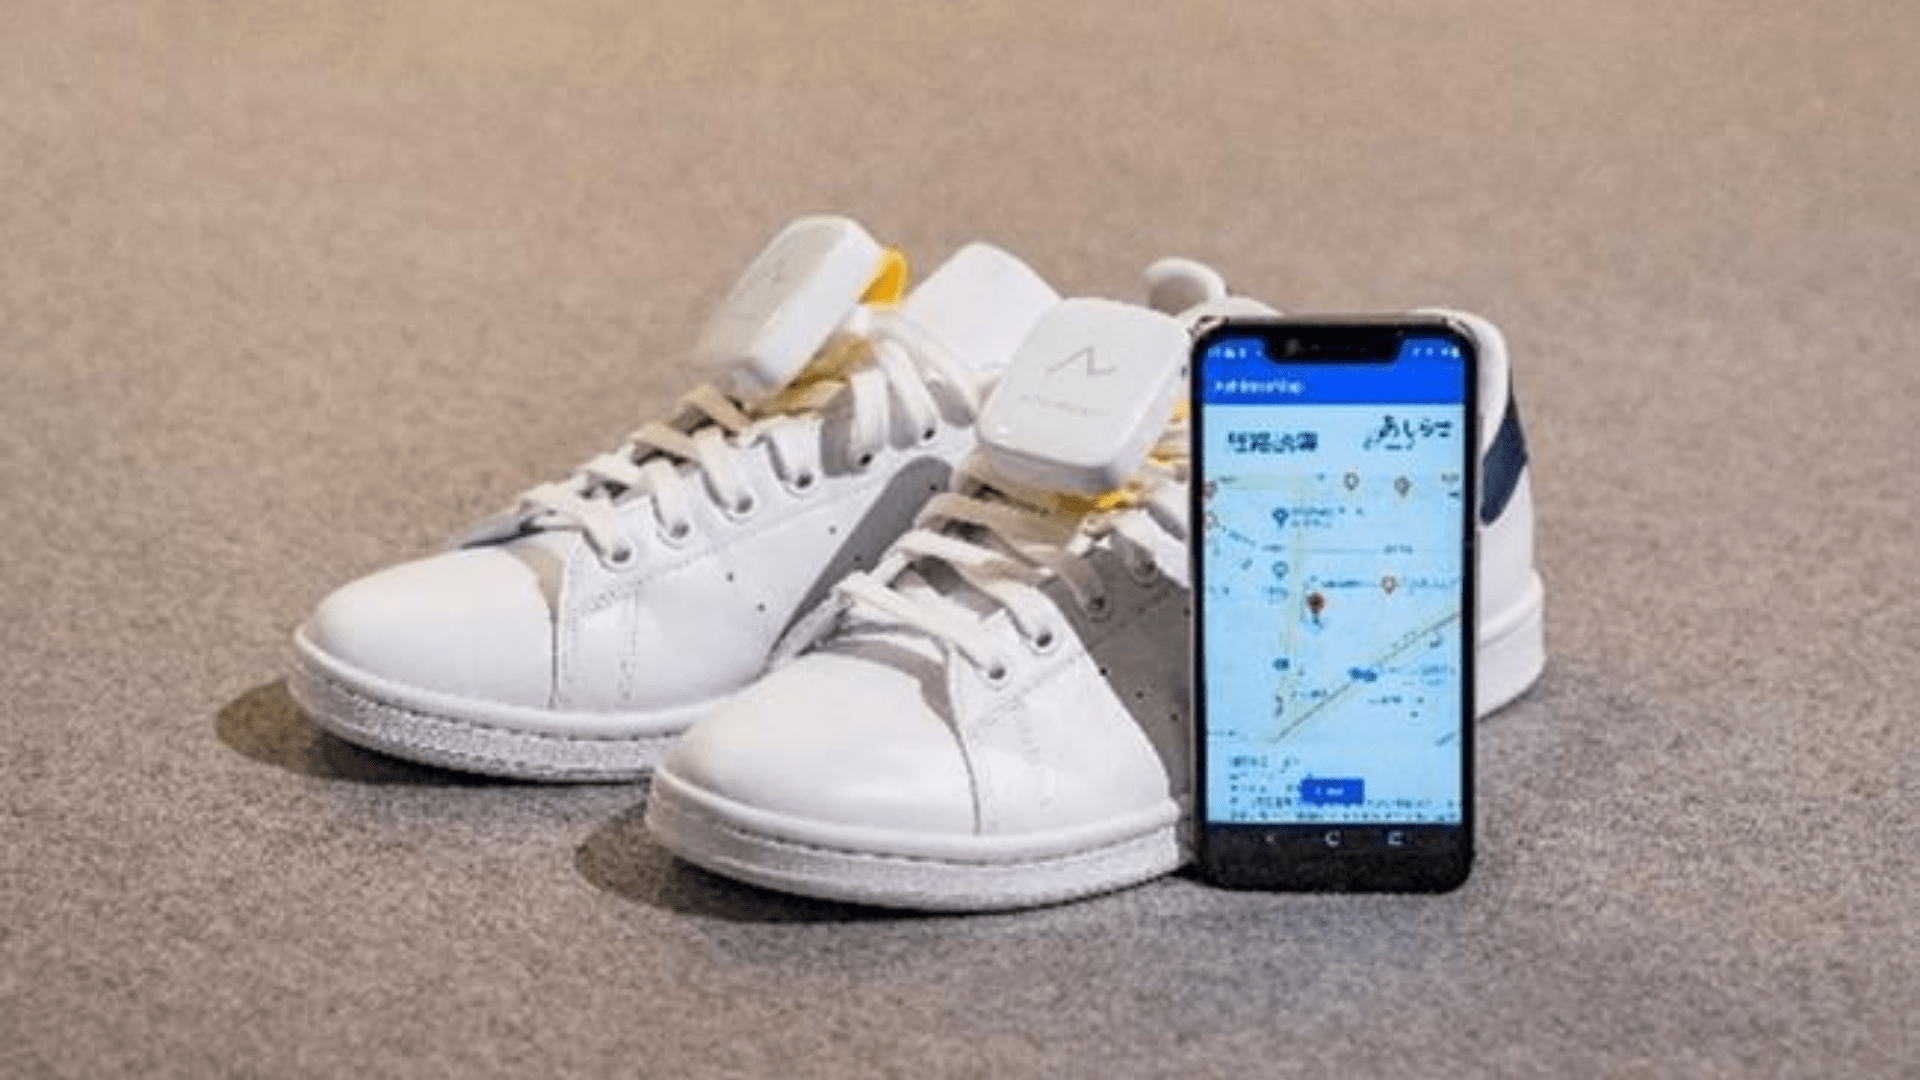 Honda entwickelt GPS-Navigationssystem für Ihre Schuhe